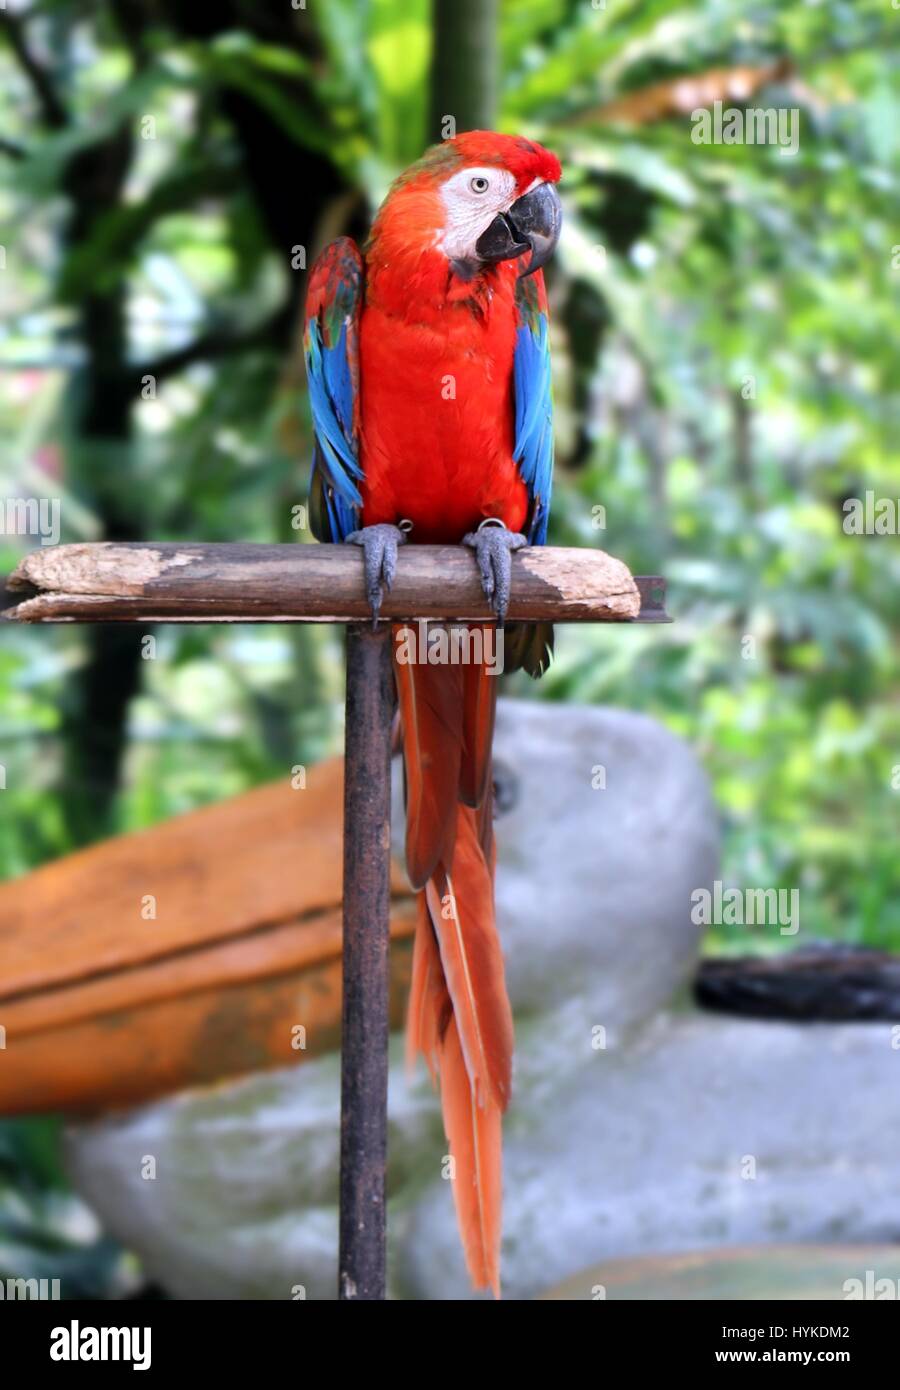 Red Parrot debout sur poteau en bois Banque D'Images